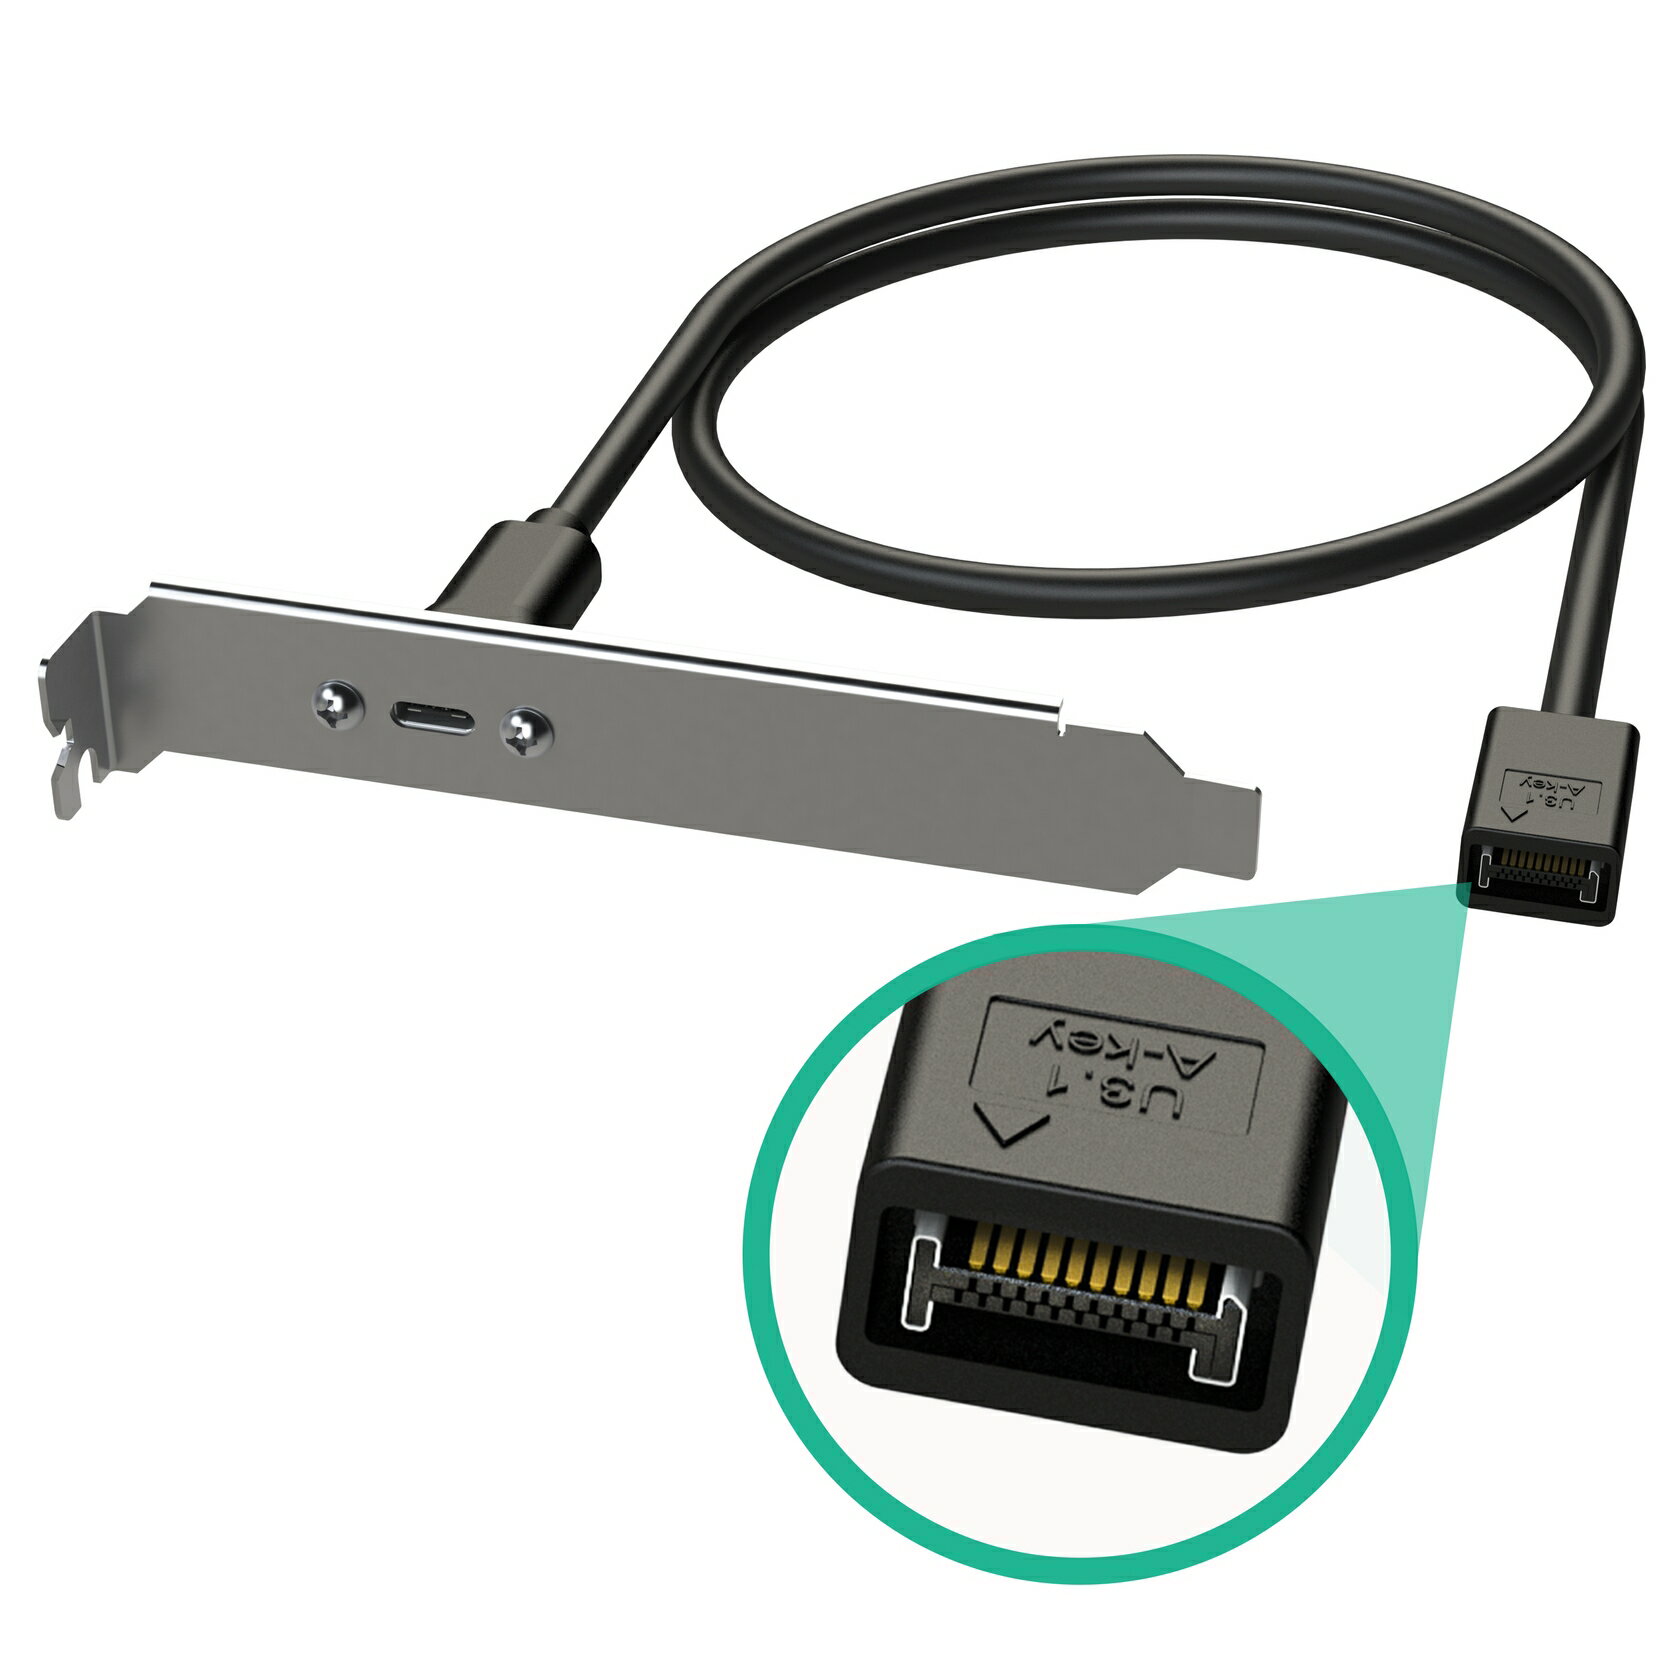 USB 2.0内蔵IDC メスコネクタ USB 3.0 オスコネクタ変換アダプタ 